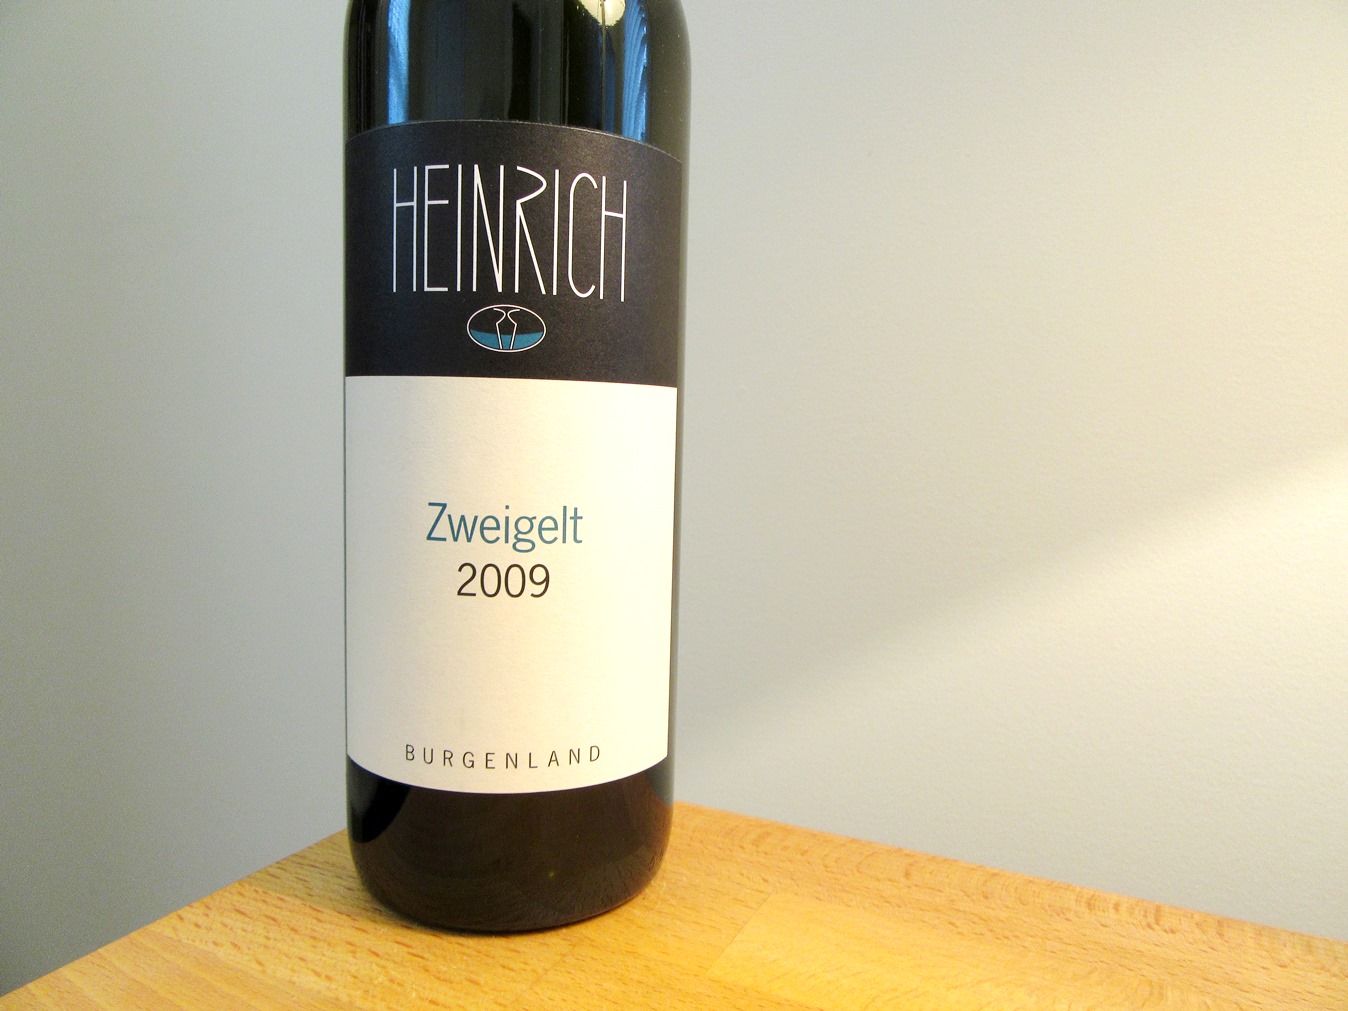 Heinrich, Zweigelt 2009, Burgenland, Austria, Wine Casual